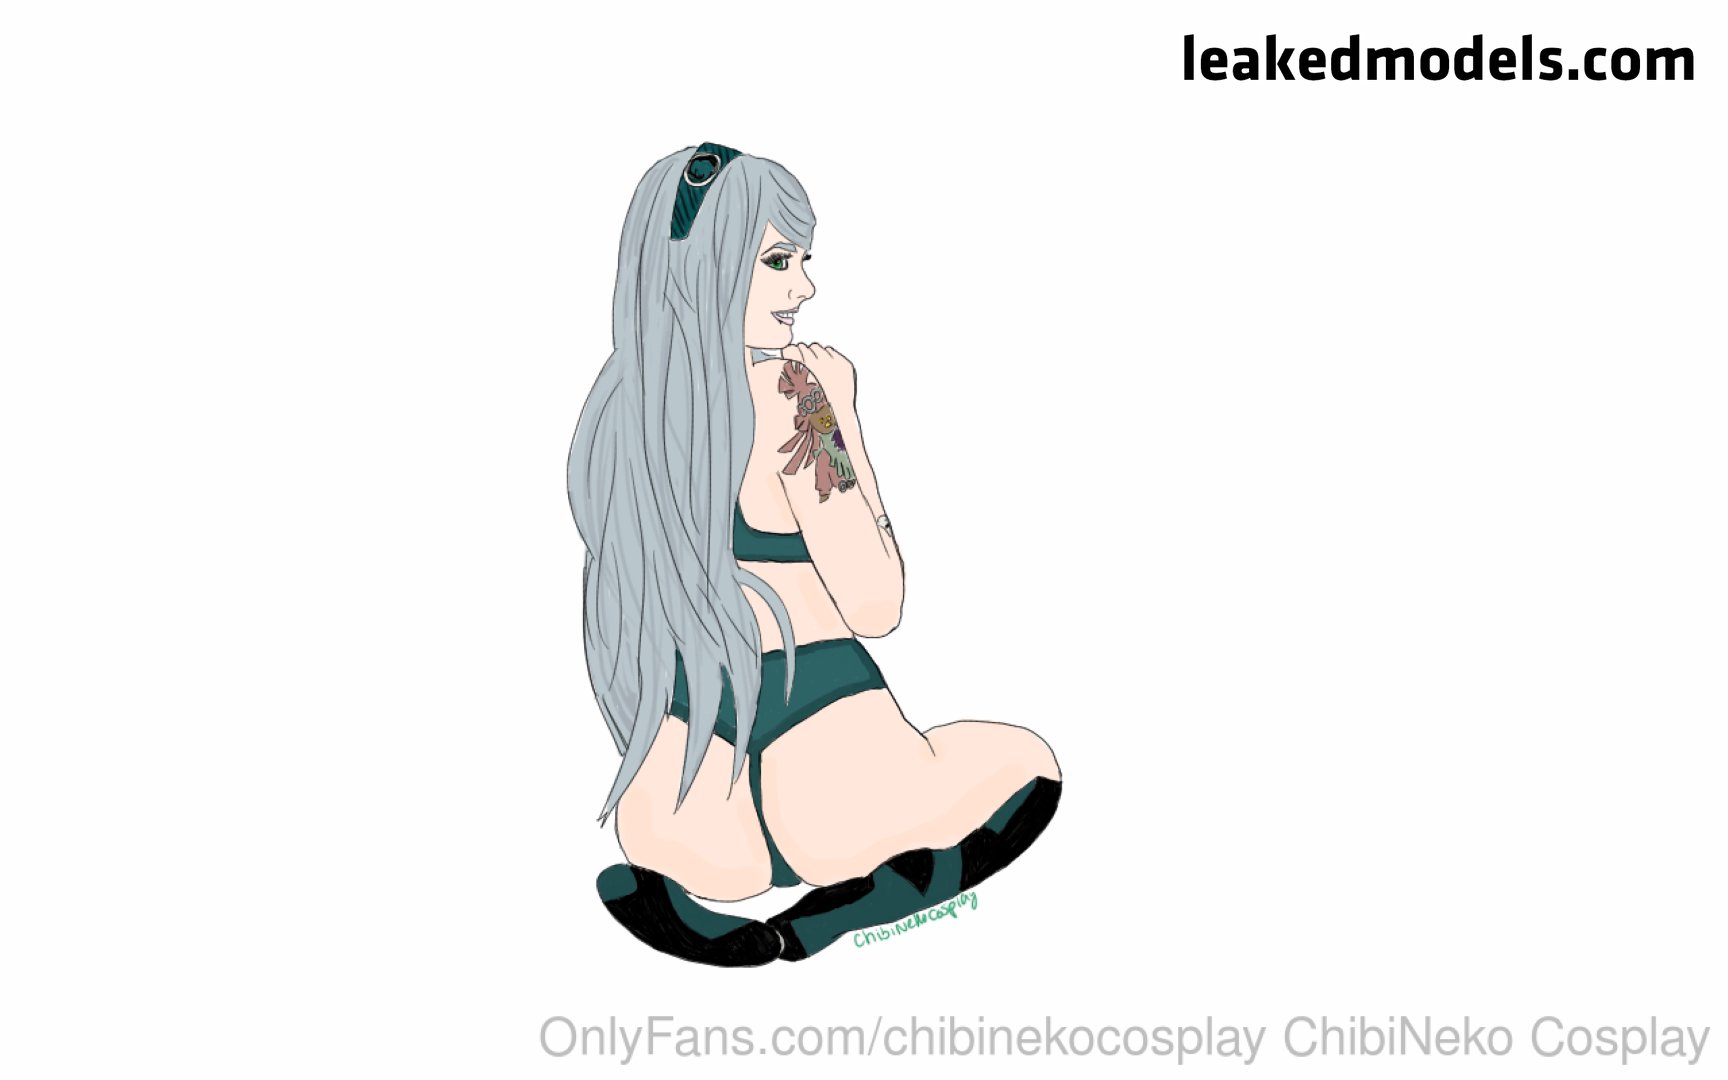 ChibiNekoCosplay nude leaks leakedmodels.com 039 - ChibiNekoCosplay – SkylaRaynesGray2 OnlyFans Leaks (79 Photos and 9 Videos)